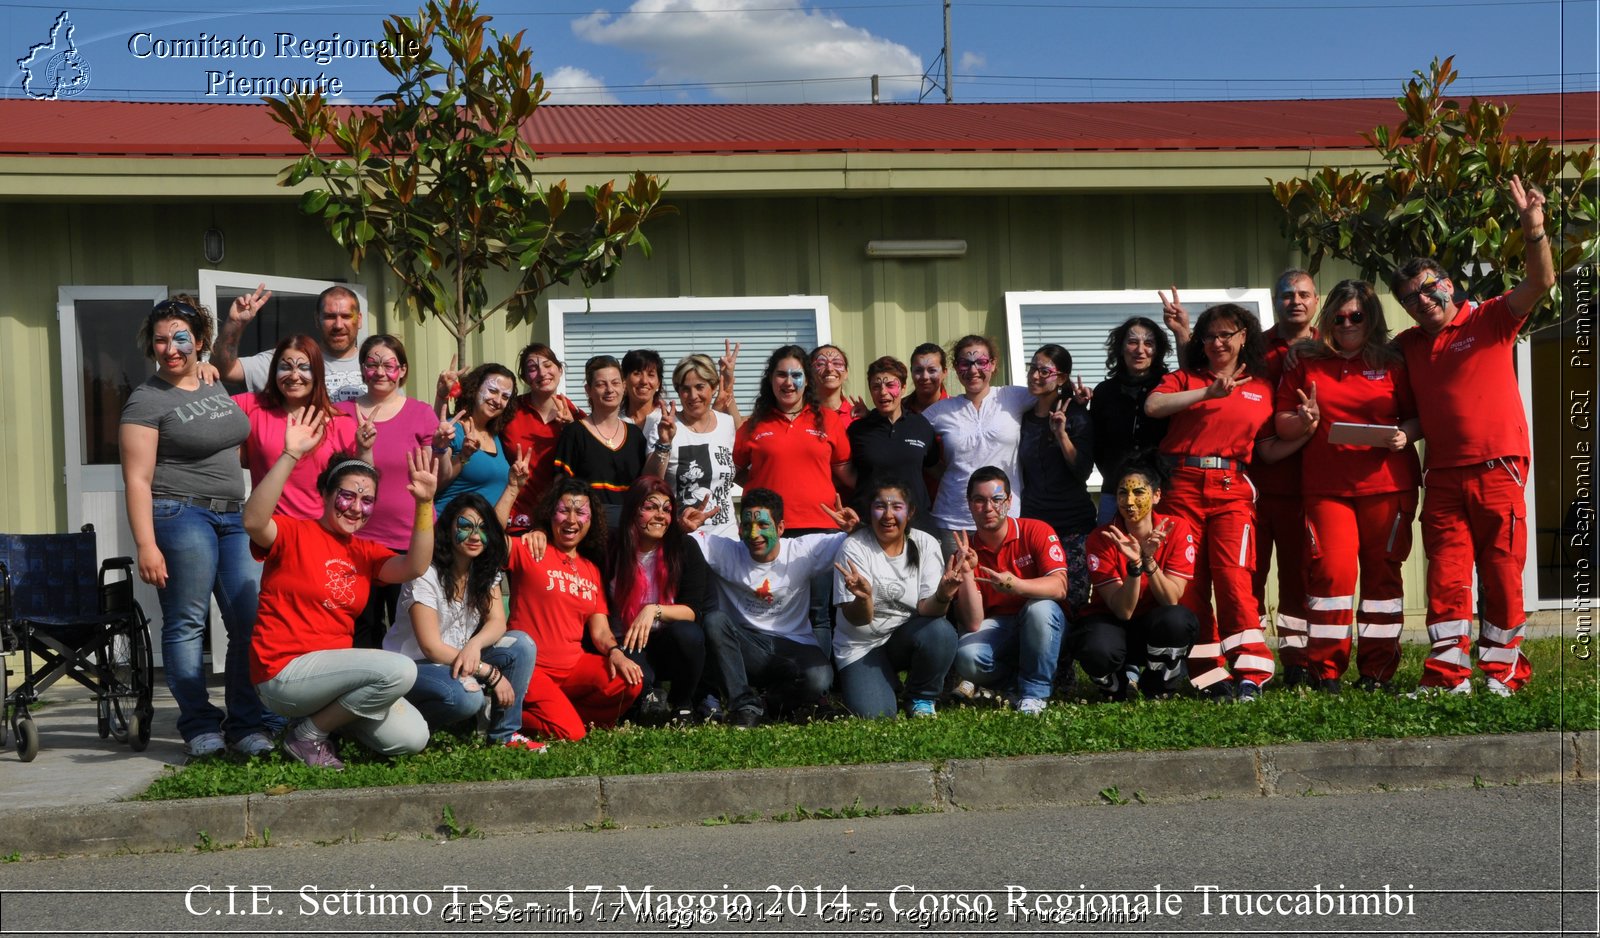 CIE Settimo 17 Maggio 2014 - Corso regionale Truccabimbi - Comitato Regionale del Piemonte